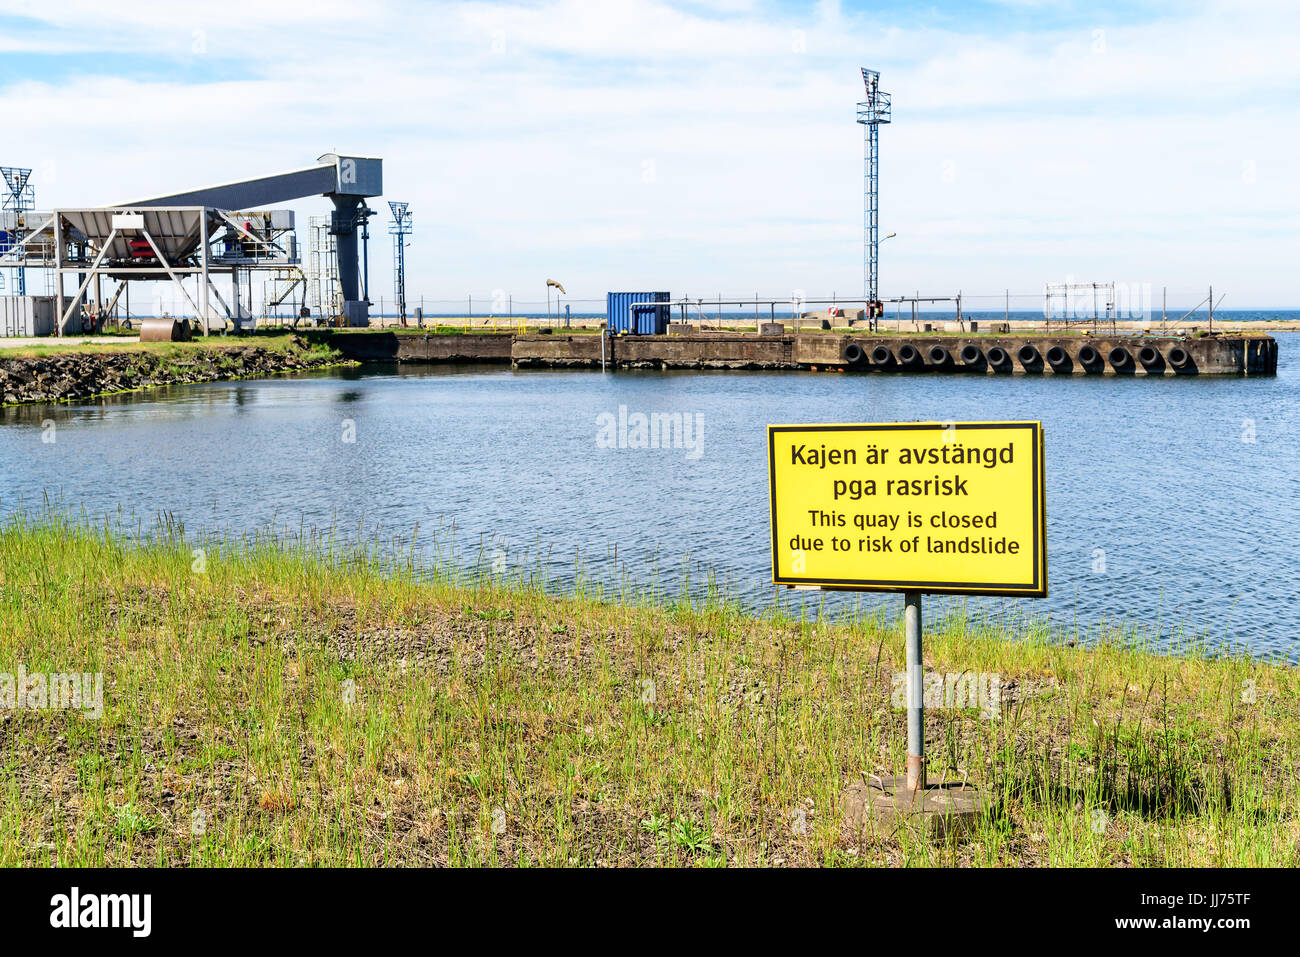 Degerhamn, Oland, Sweden - 28 mai 2017 : l'environnement documentaire de quai fermé. Panneau jaune met en garde contre le risque de glissements de terrain et que le quai est fermé. Pi Banque D'Images